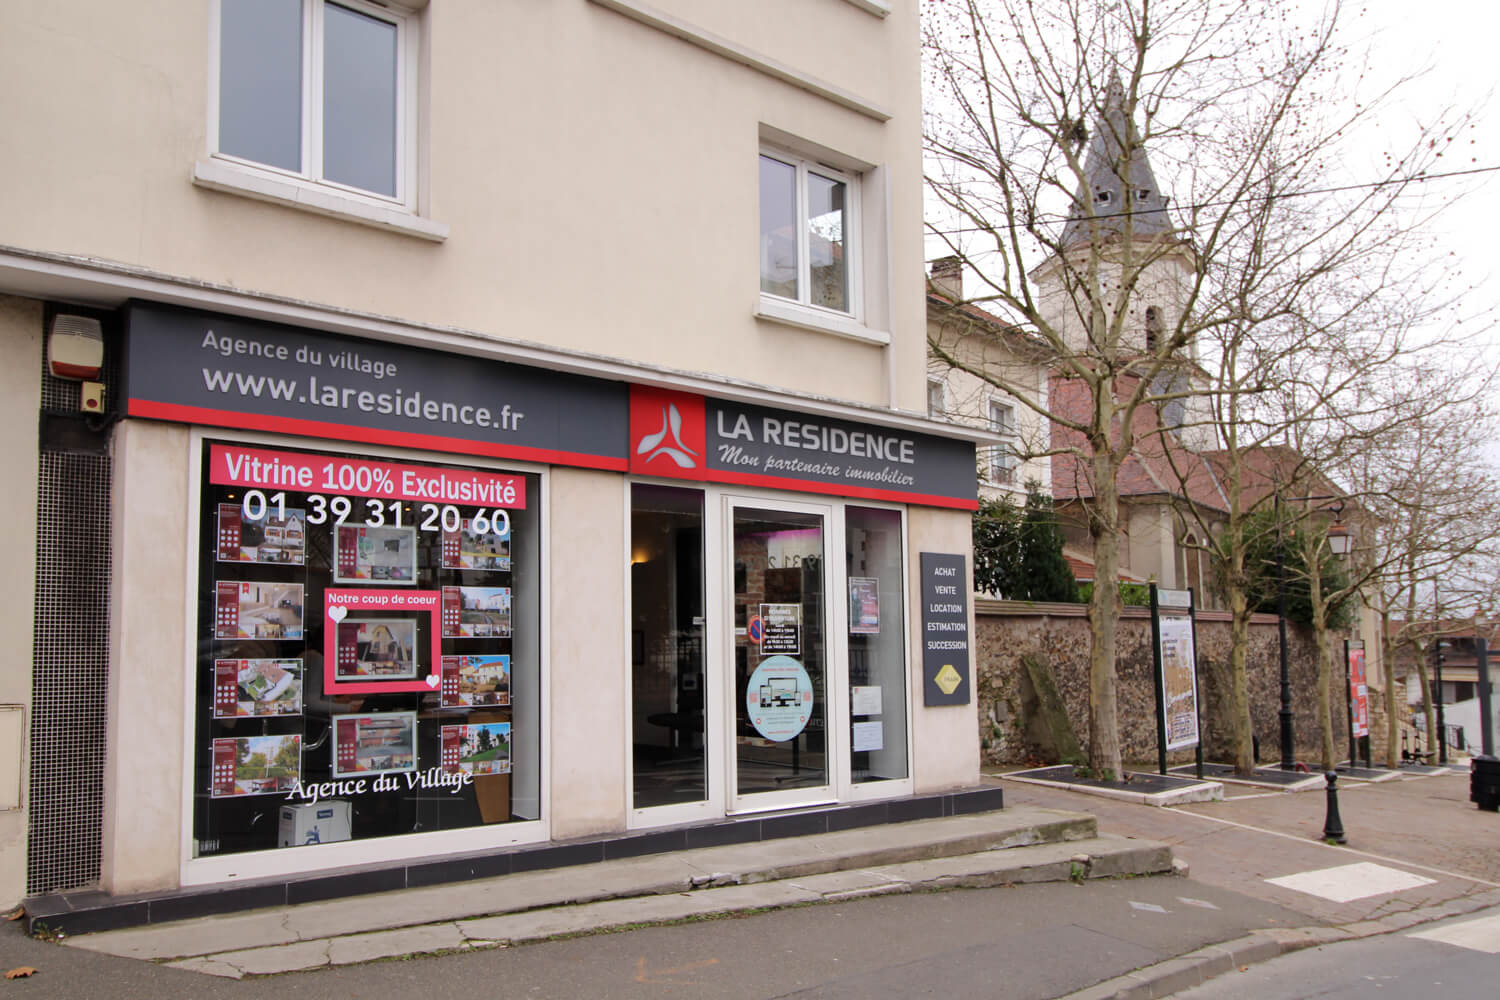 Prix immobilier Montigny les Cormeilles 95370 - La Résidence